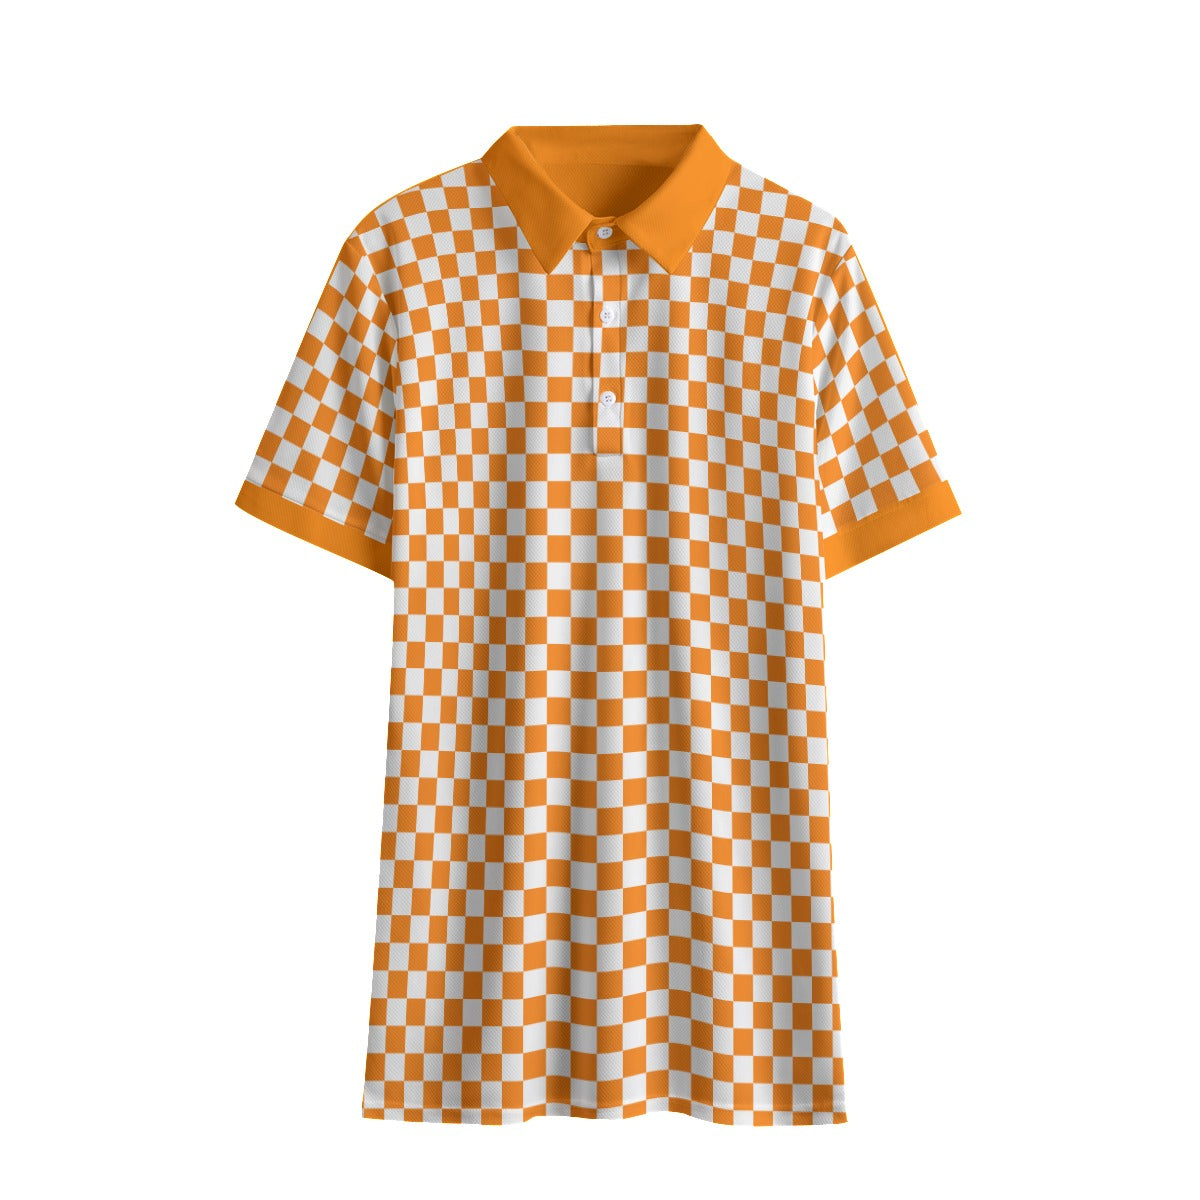 Checkerboard Men's Polo Shirt Birdseye